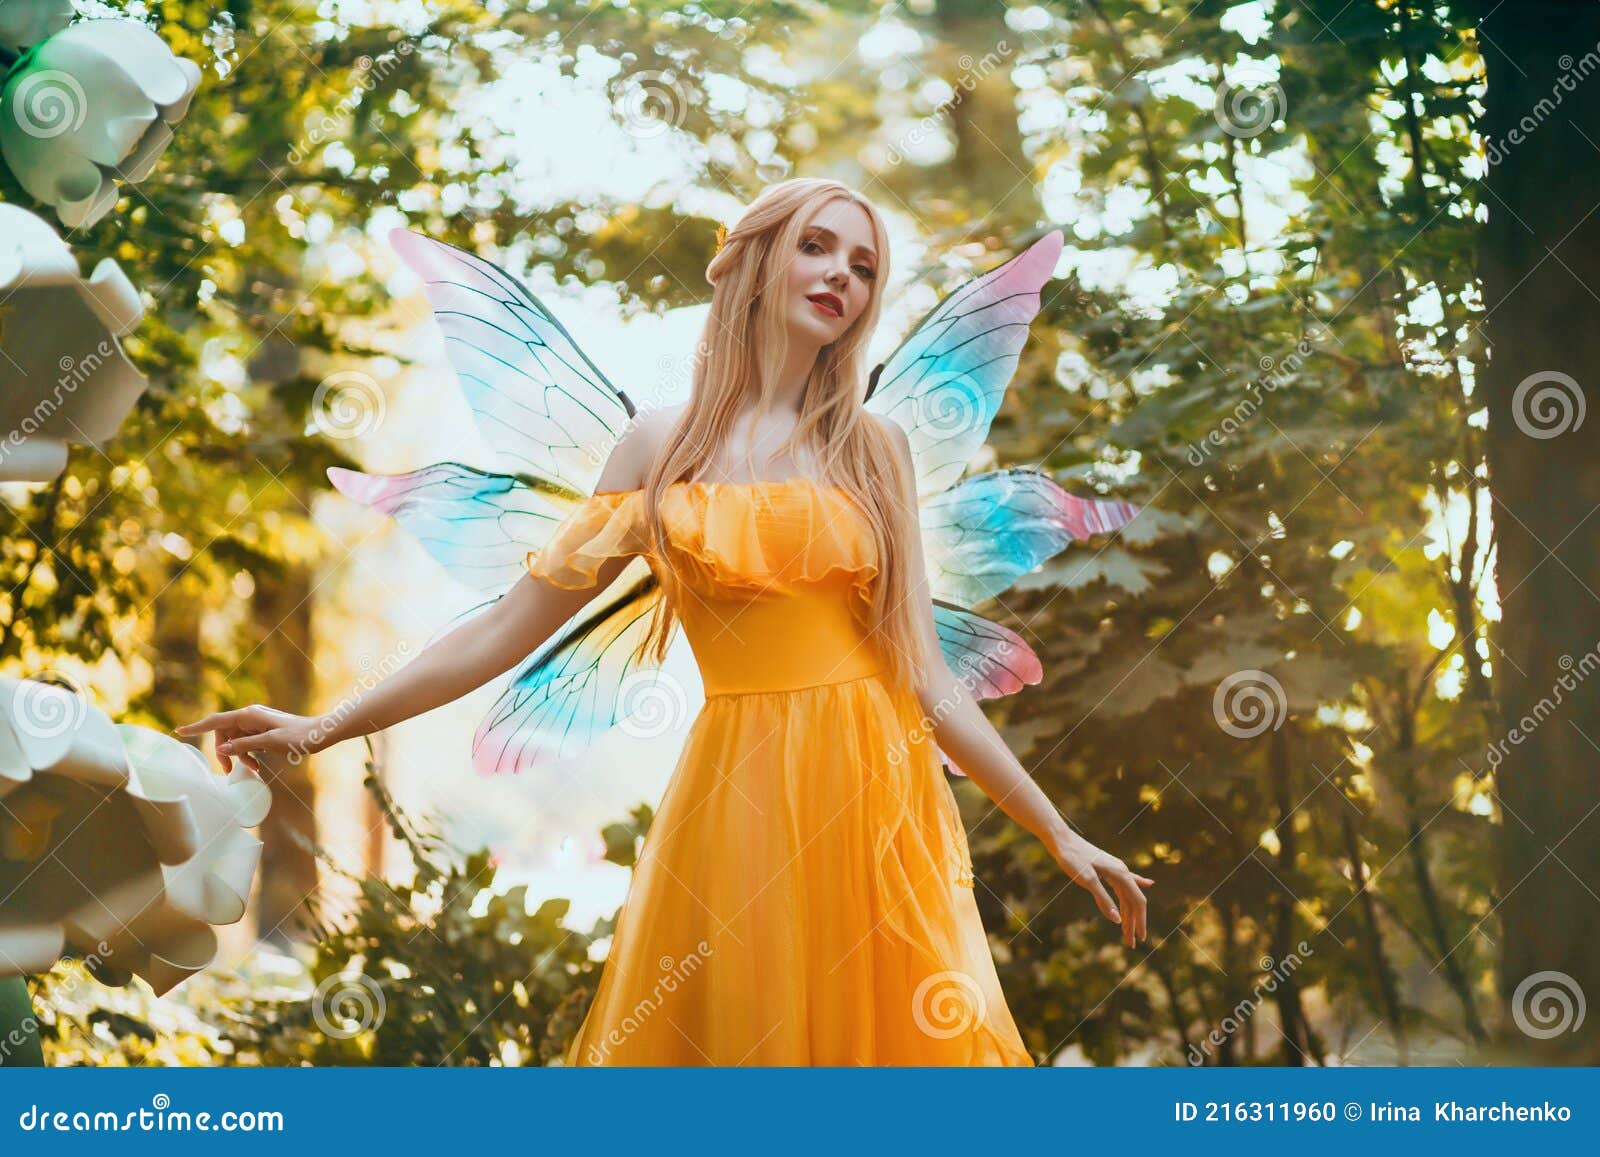 https://thumbs.dreamstime.com/z/retrato-fantas%C3%ADa-mujer-rubia-bosque-hada-modelo-de-la-moda-muchacha-elfa-en-el-vestido-amarillo-brillante-alas-mariposa-paseos-216311960.jpg